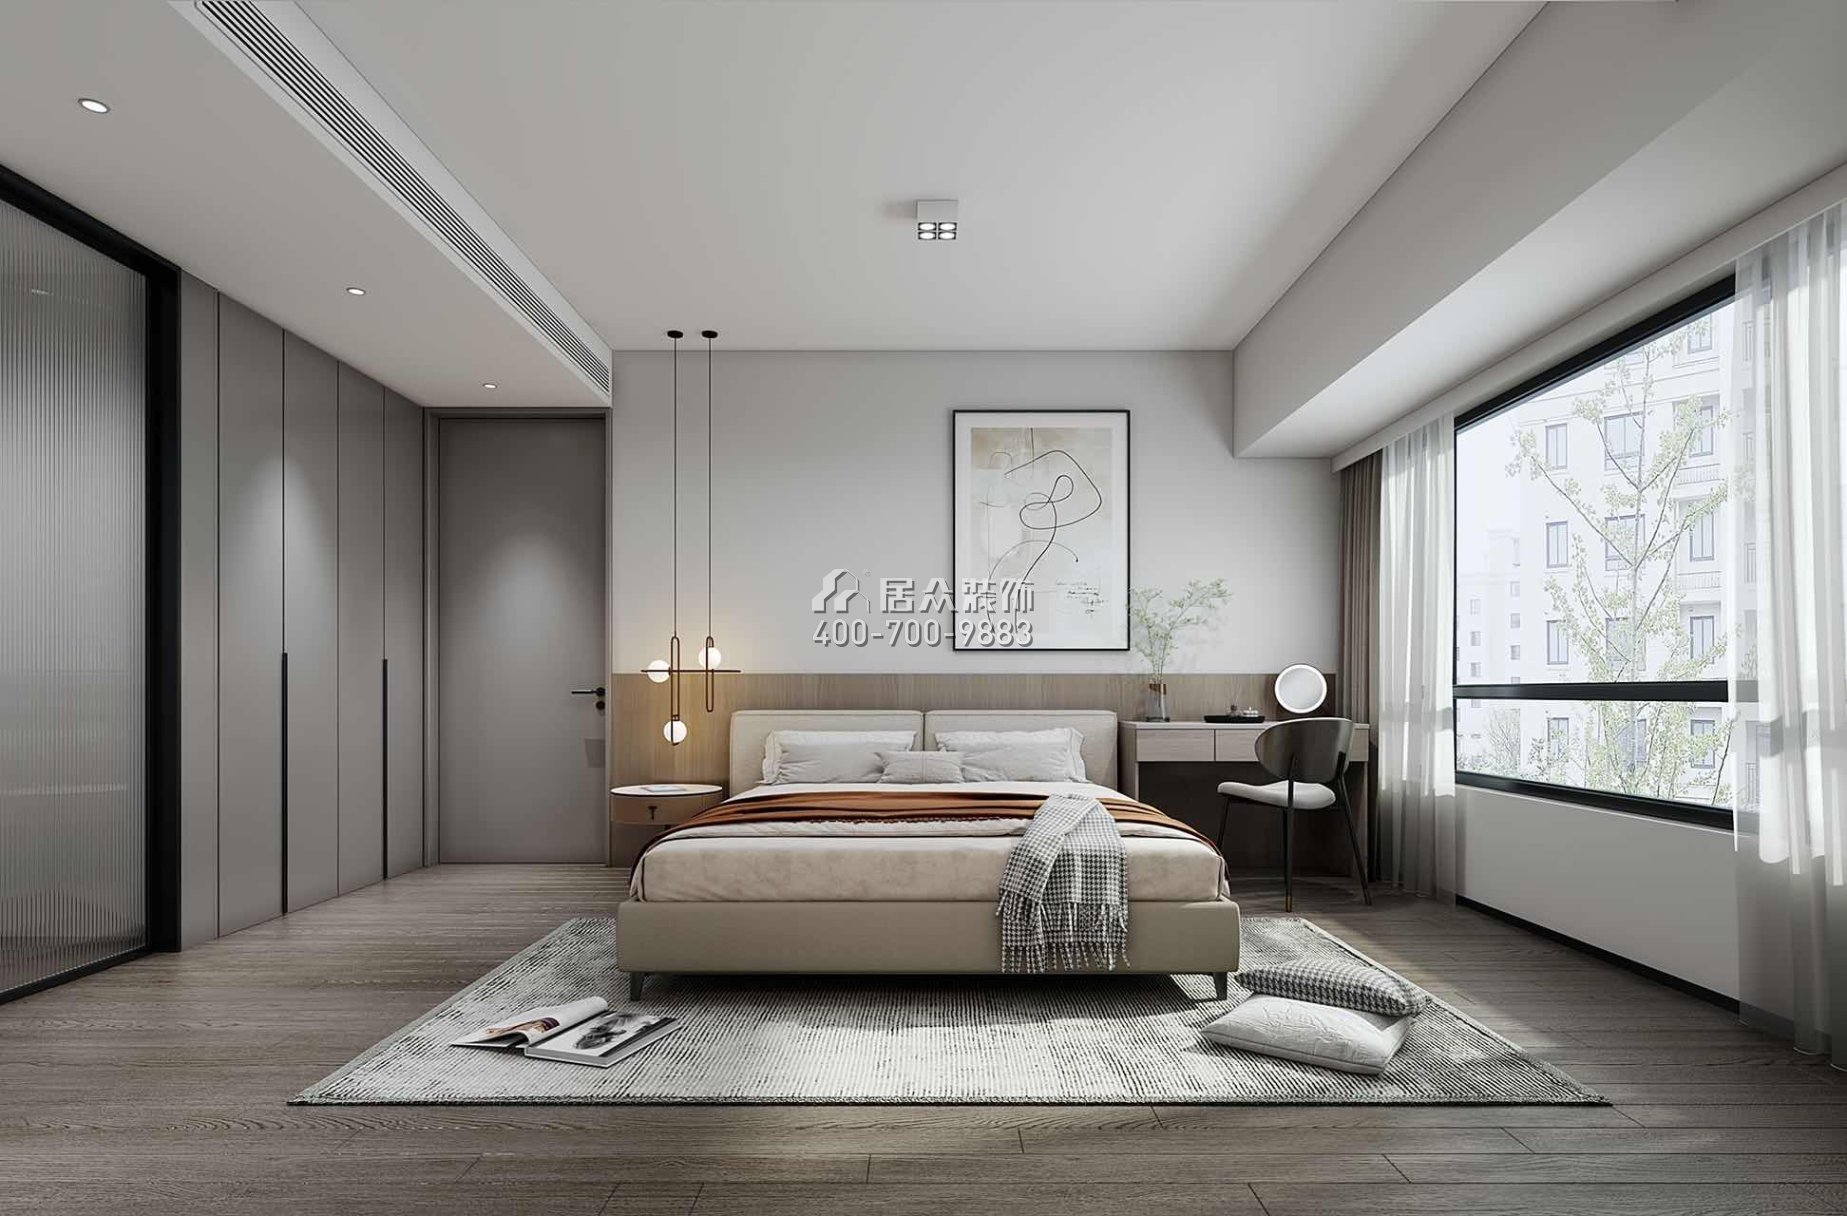 新錦安海納公館120平方米現代簡約風格平層戶型臥室裝修效果圖